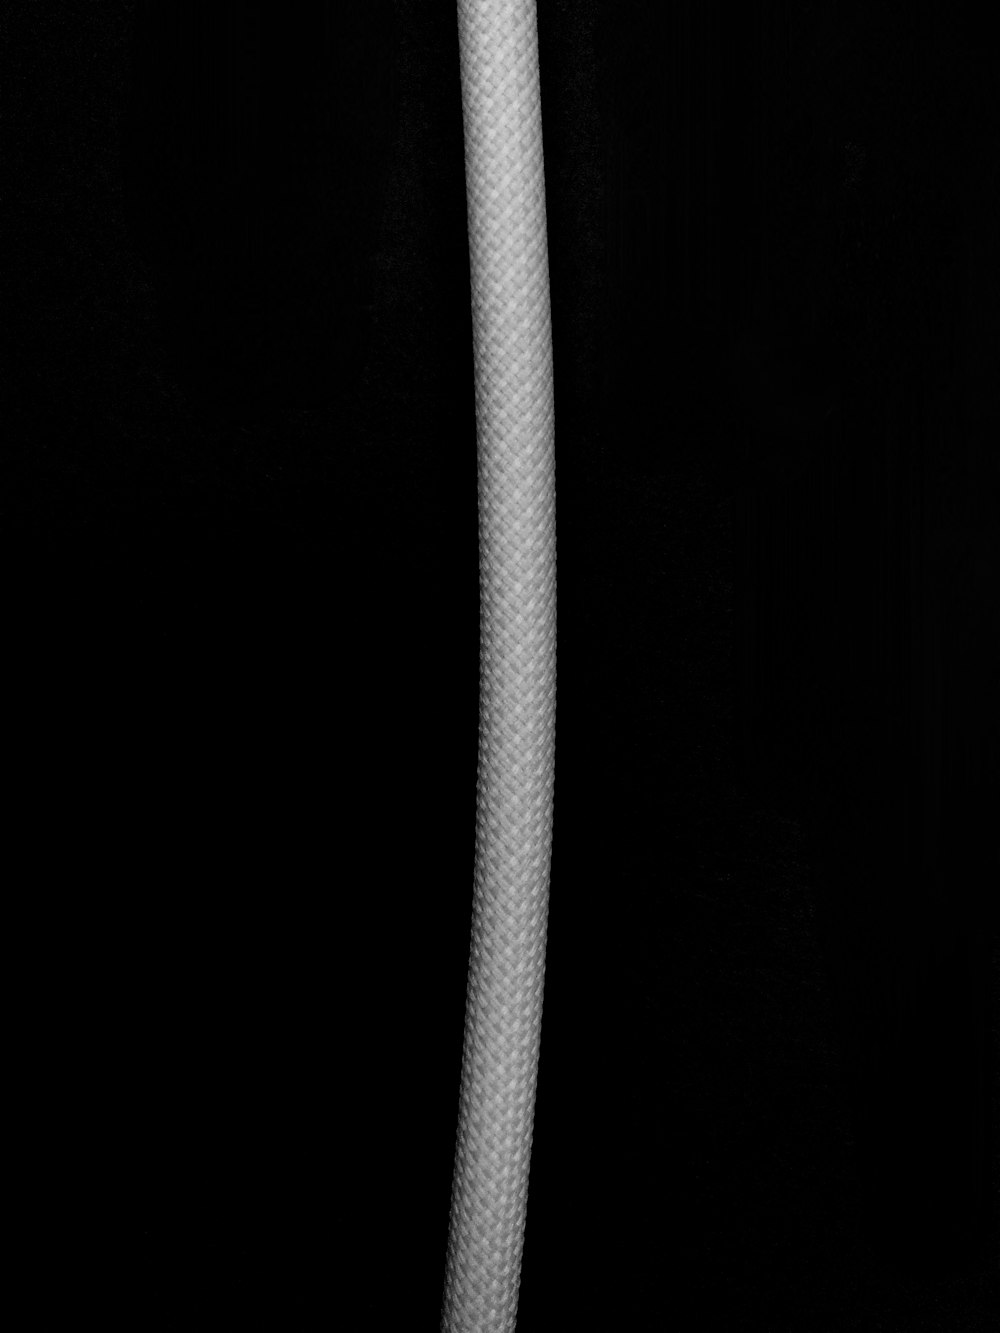 cuerda blanca sobre fondo negro